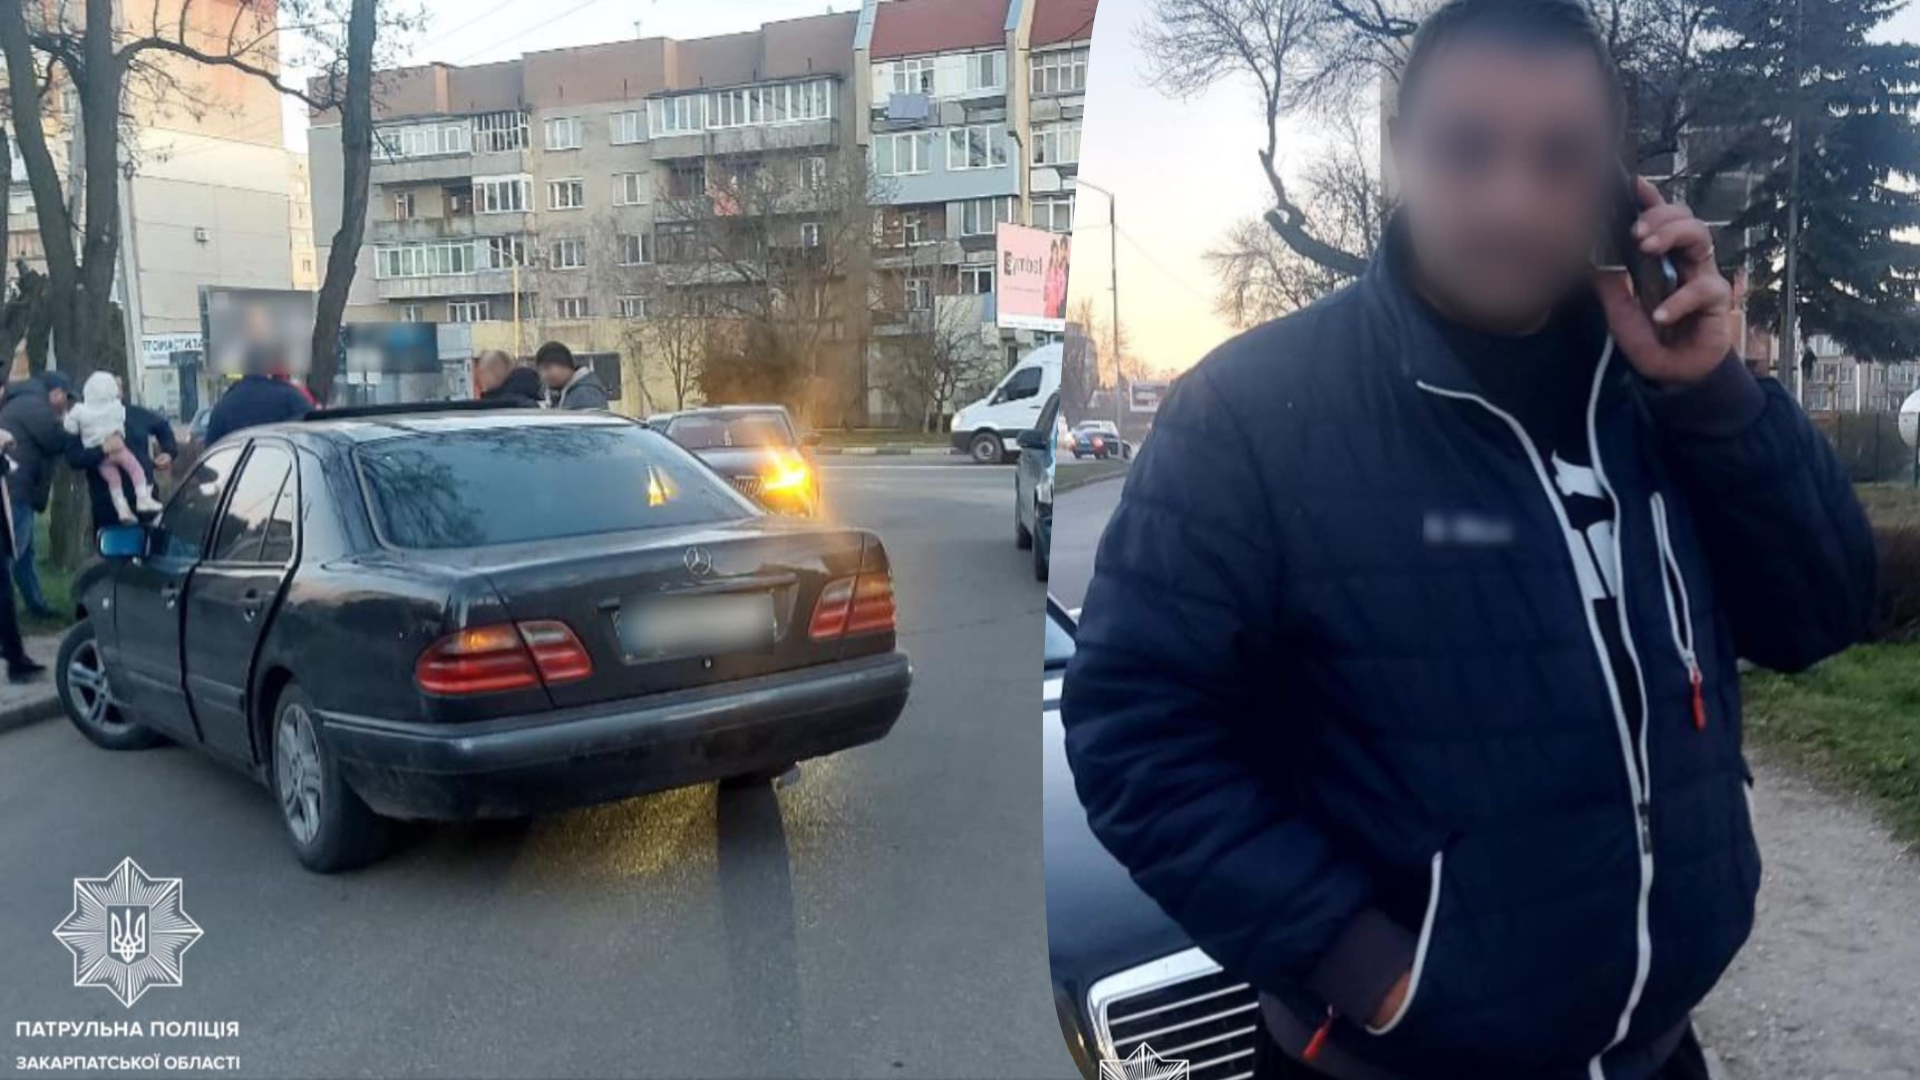 Автопригода трапилася вчора на вулиці Баб‘яка, в Ужгороді. Близько 18-ї години інспектори отримали виклик про ДТП.
